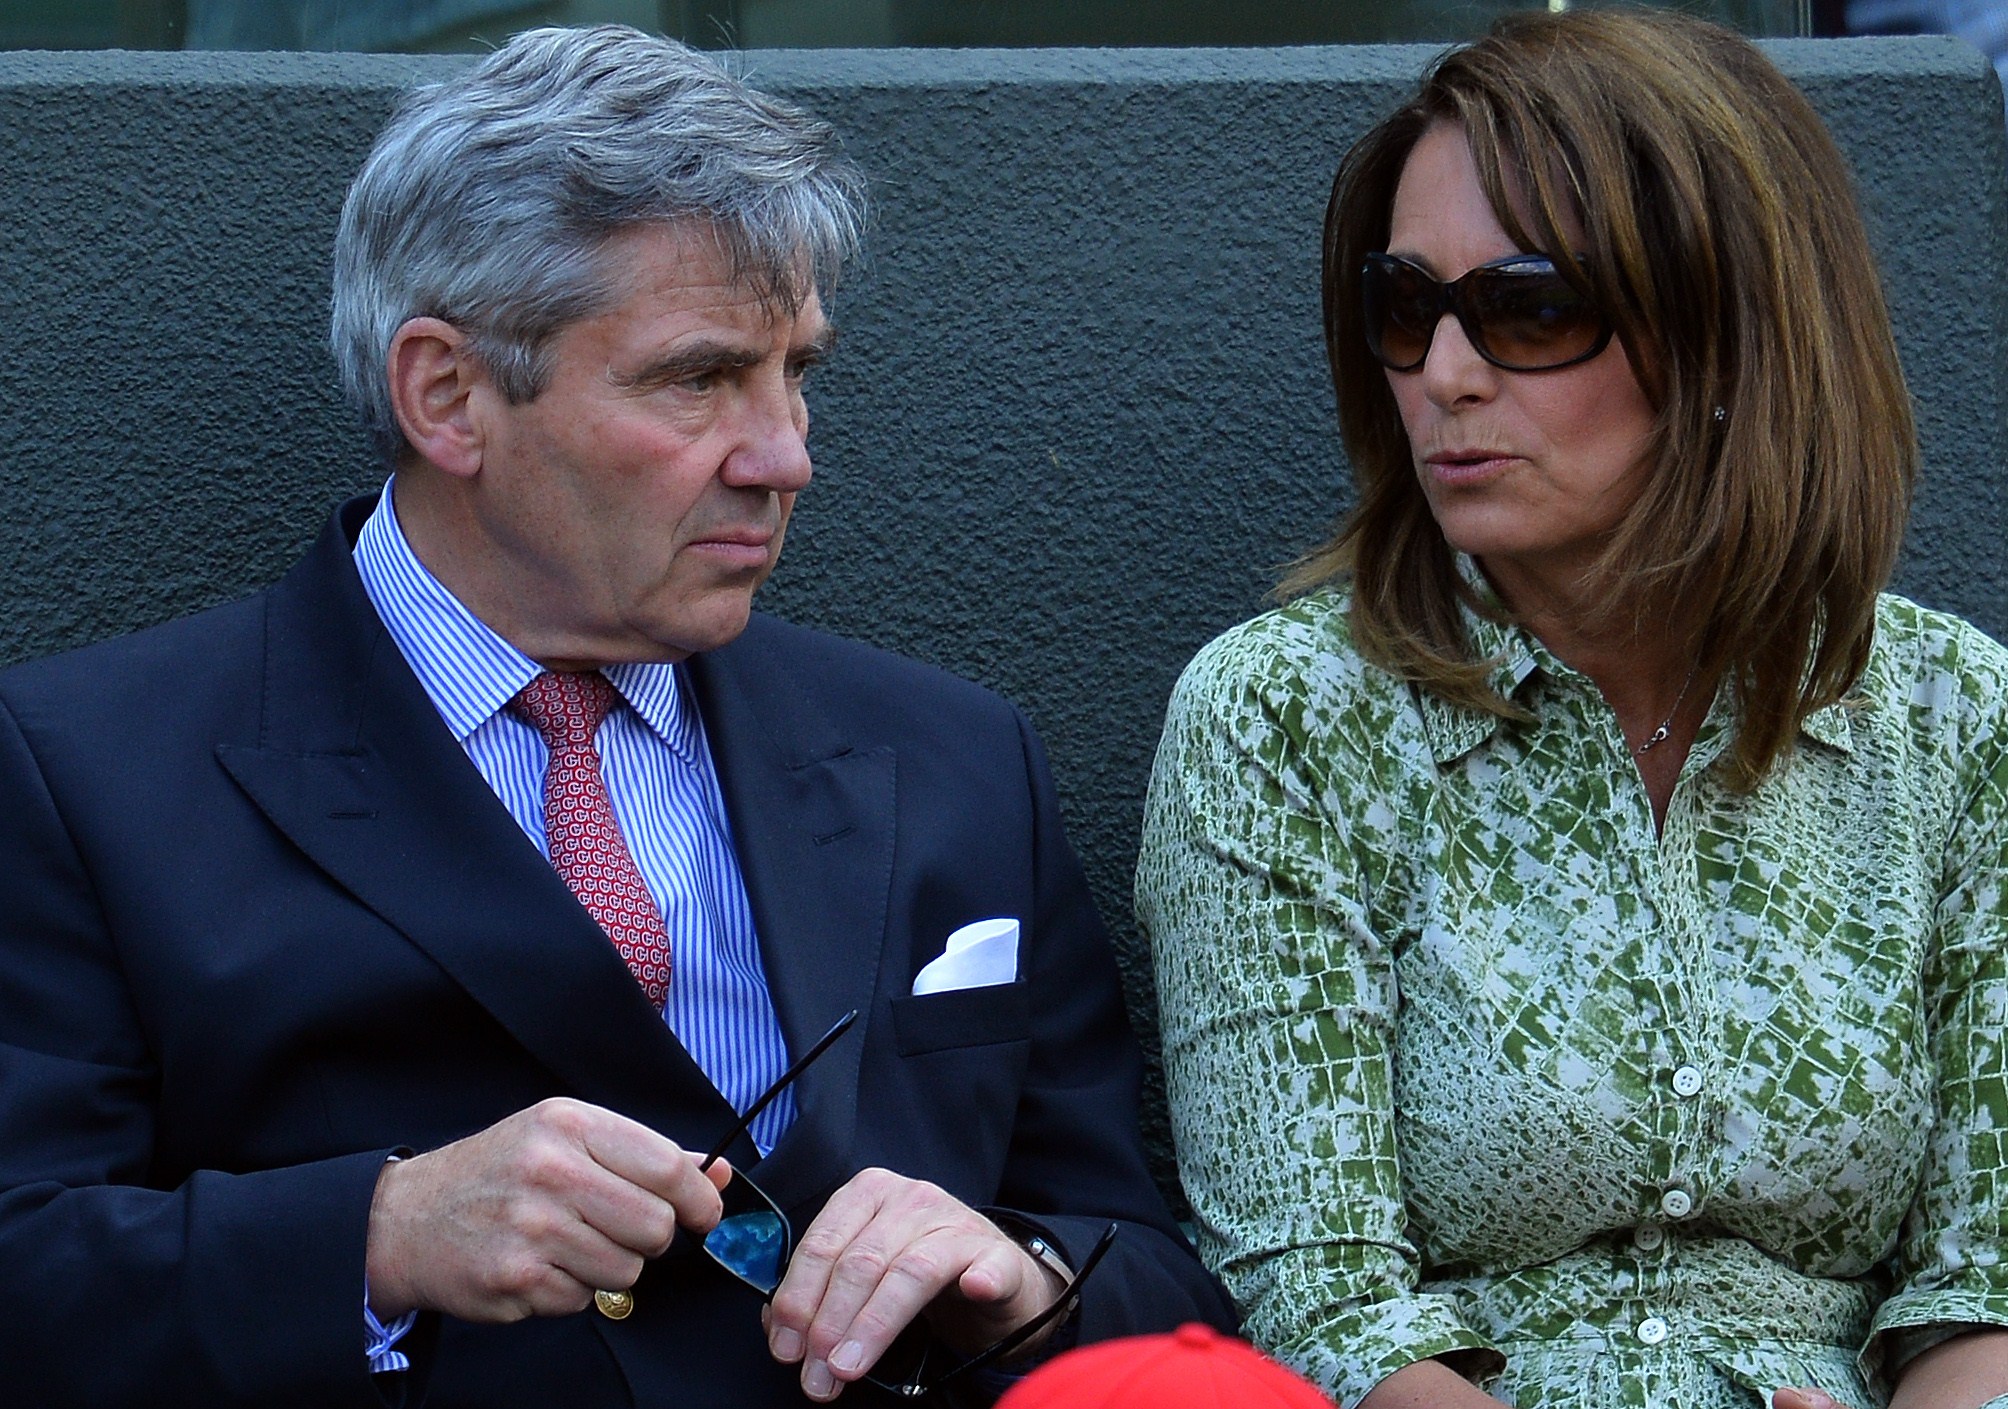 Michael Middleton und Carole Middleton bei den Wimbledon Championships in London im Jahr 2015 | Quelle: Getty Images